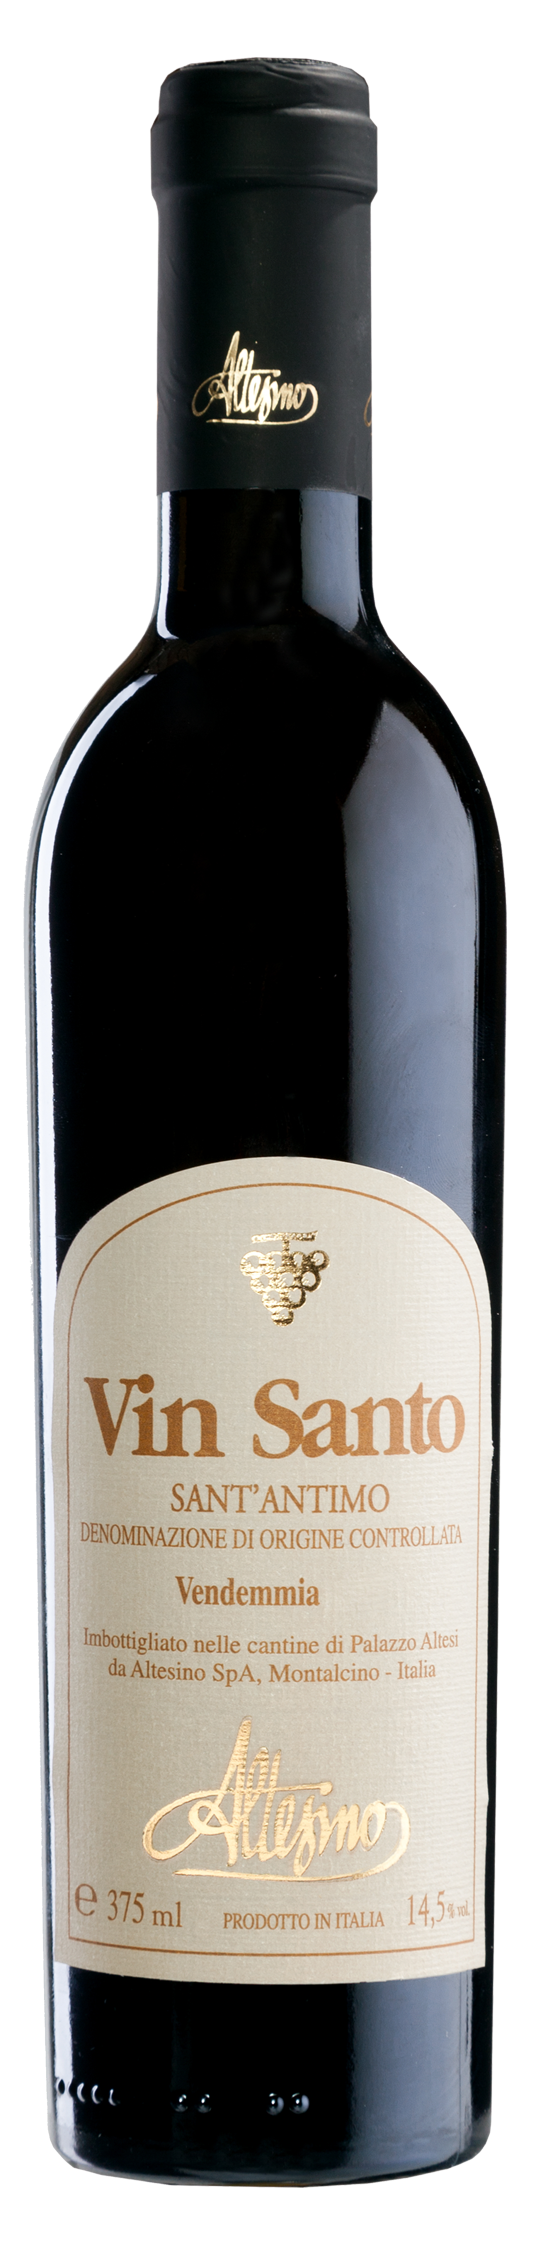 Vin Santo d'Altesi 0,375 DOC 2012